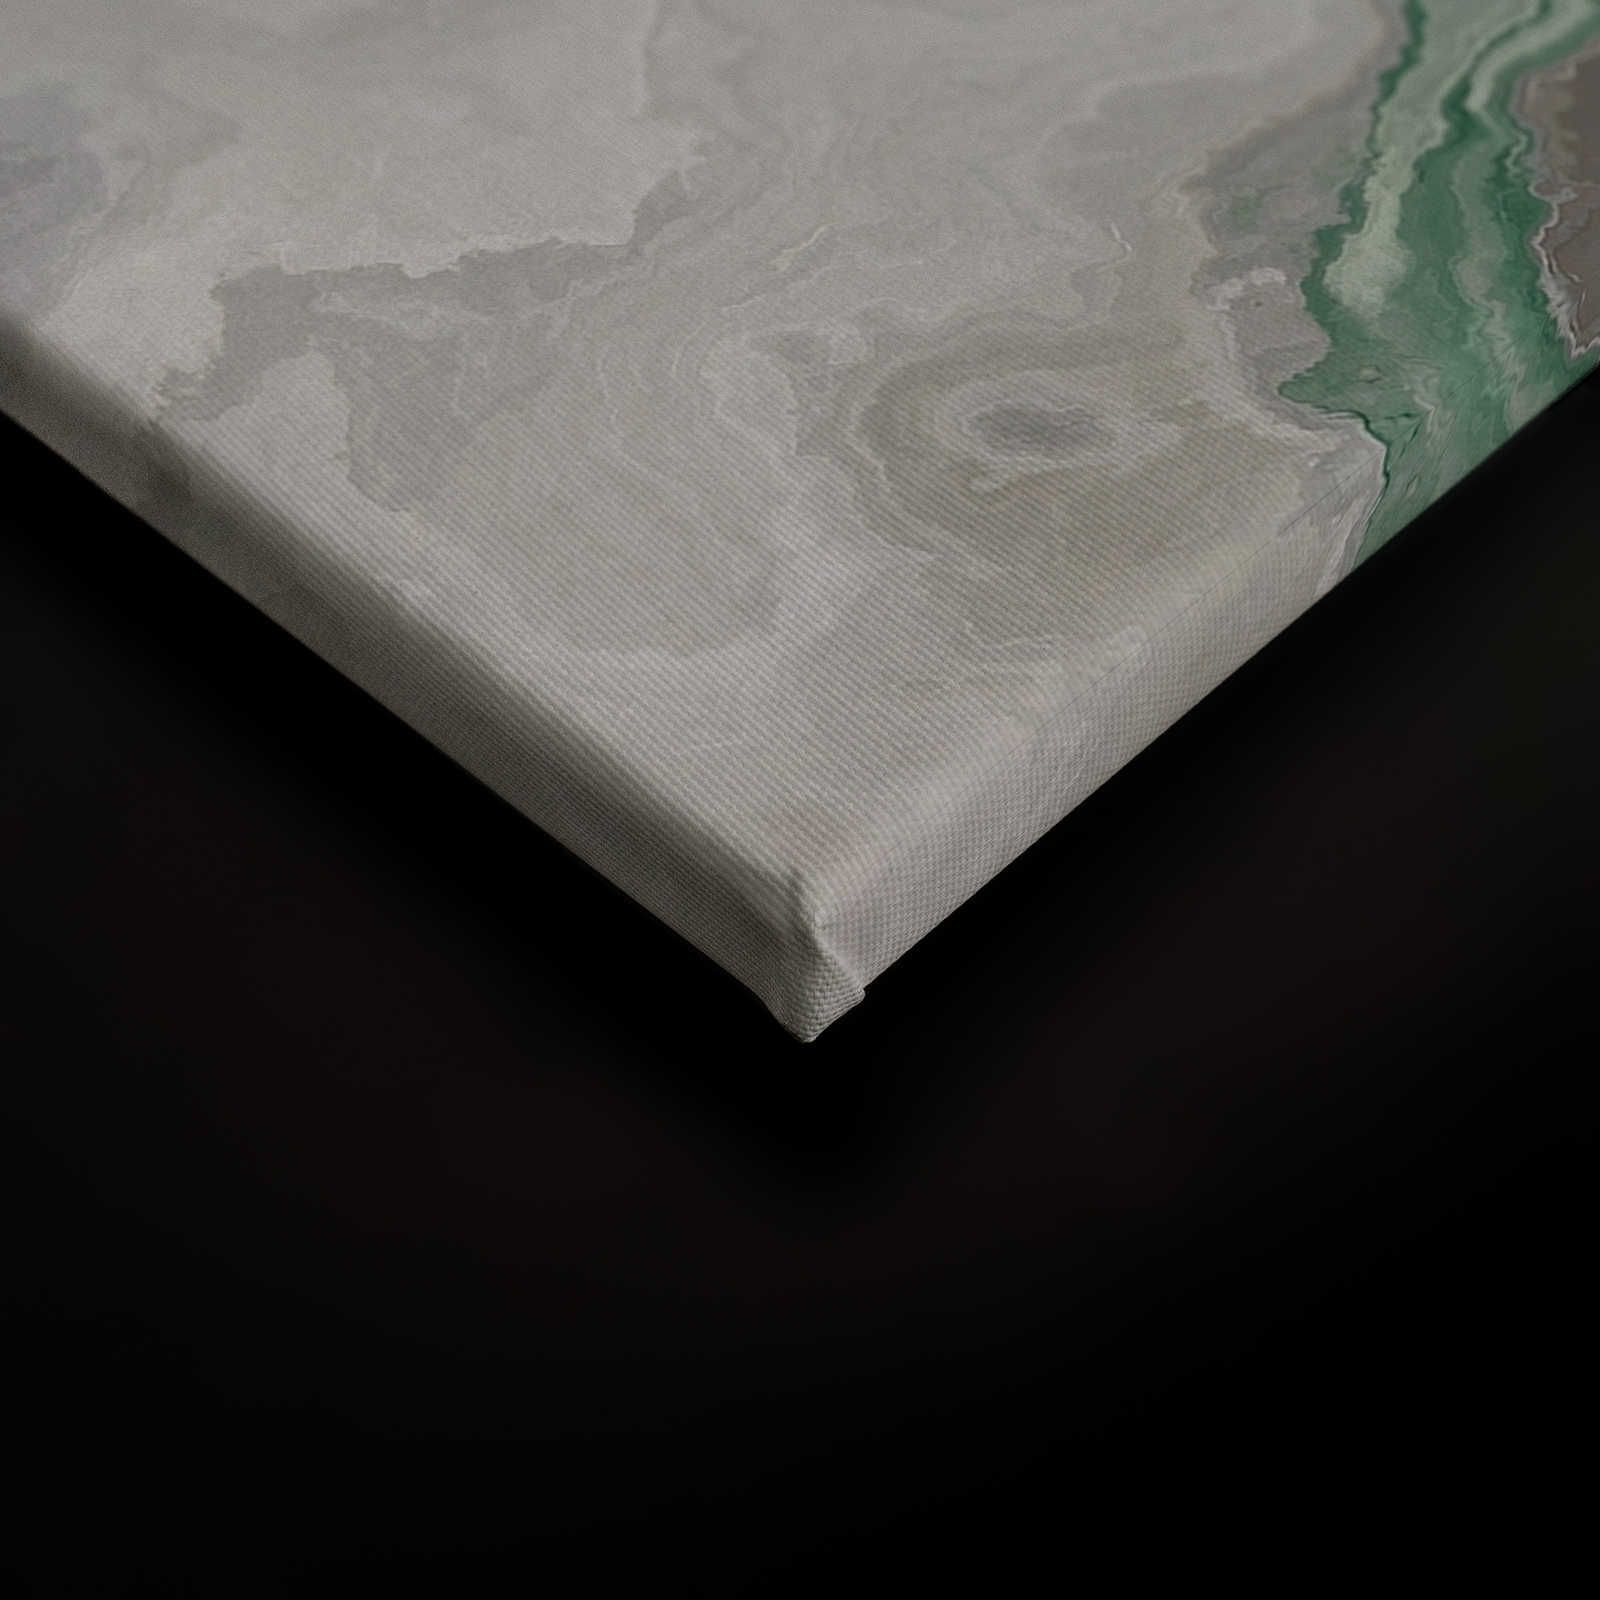             Quadro su tela al quarzo con marmorizzazione - 0,90 m x 0,60 m
        